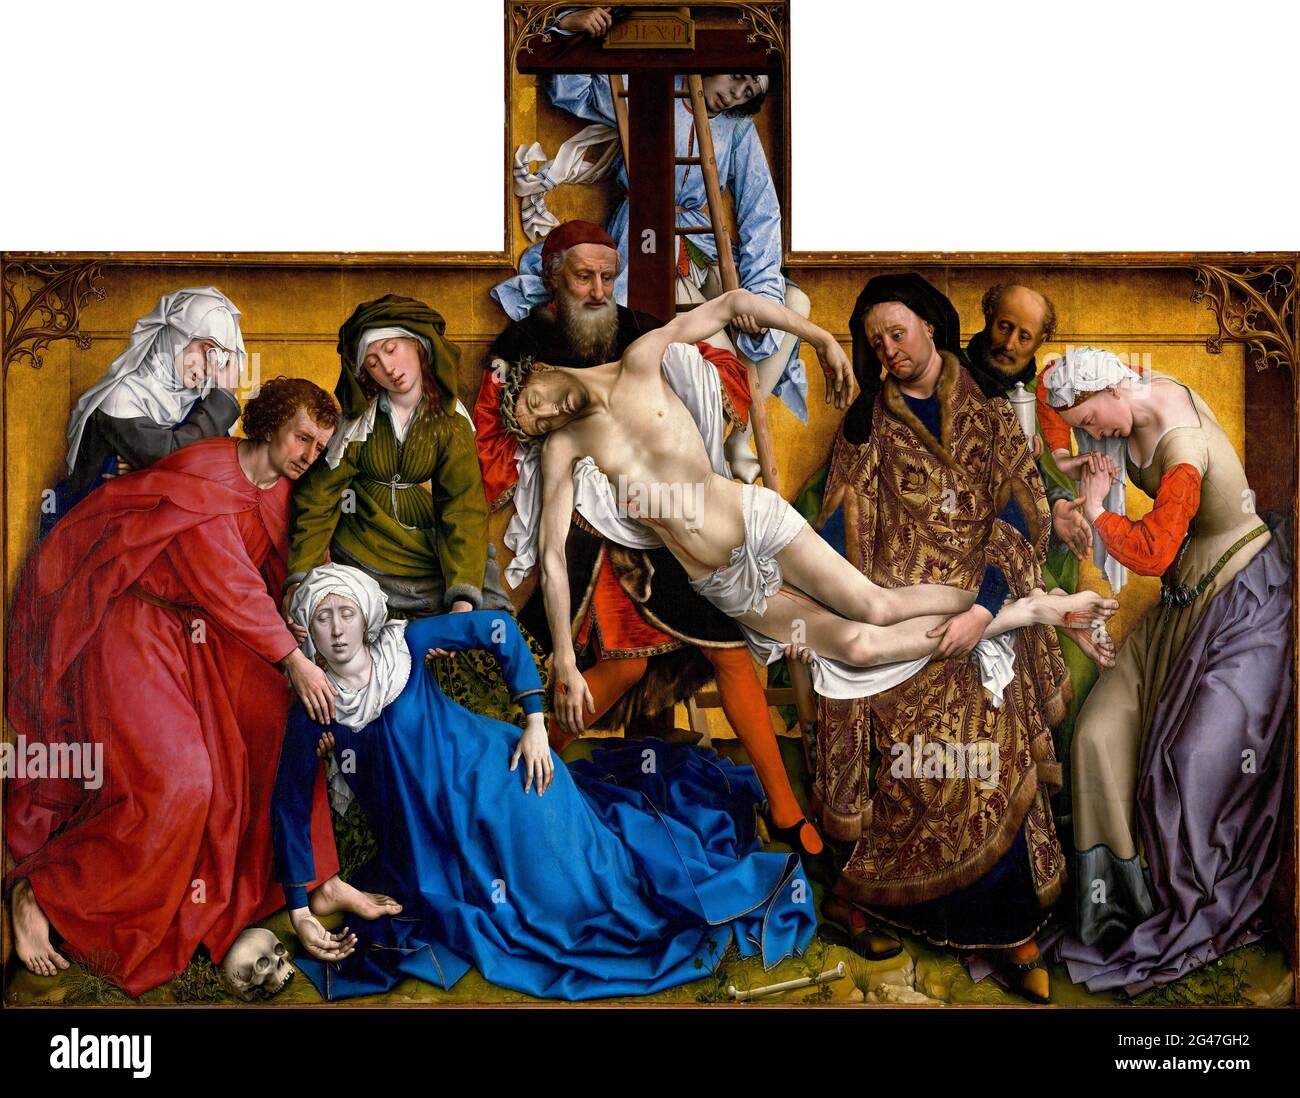 La descente de la Croix par Rogier van der Weyden (c.1399-1464), huile sur panneau, c. 1435 Banque D'Images